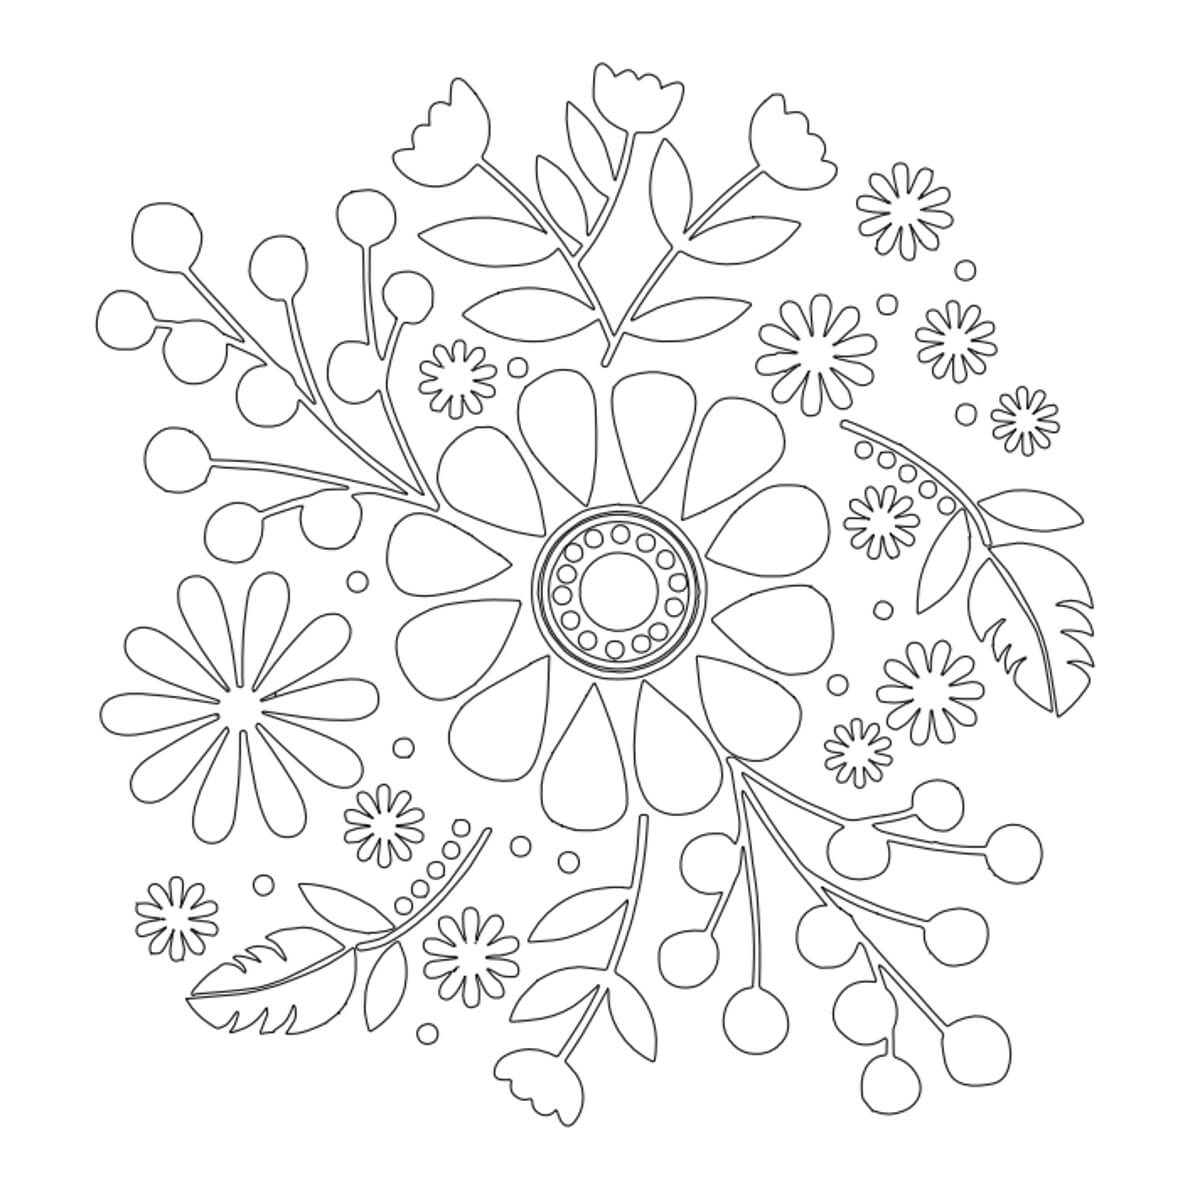 Handstickdesign Boho Floral Collection (Download)